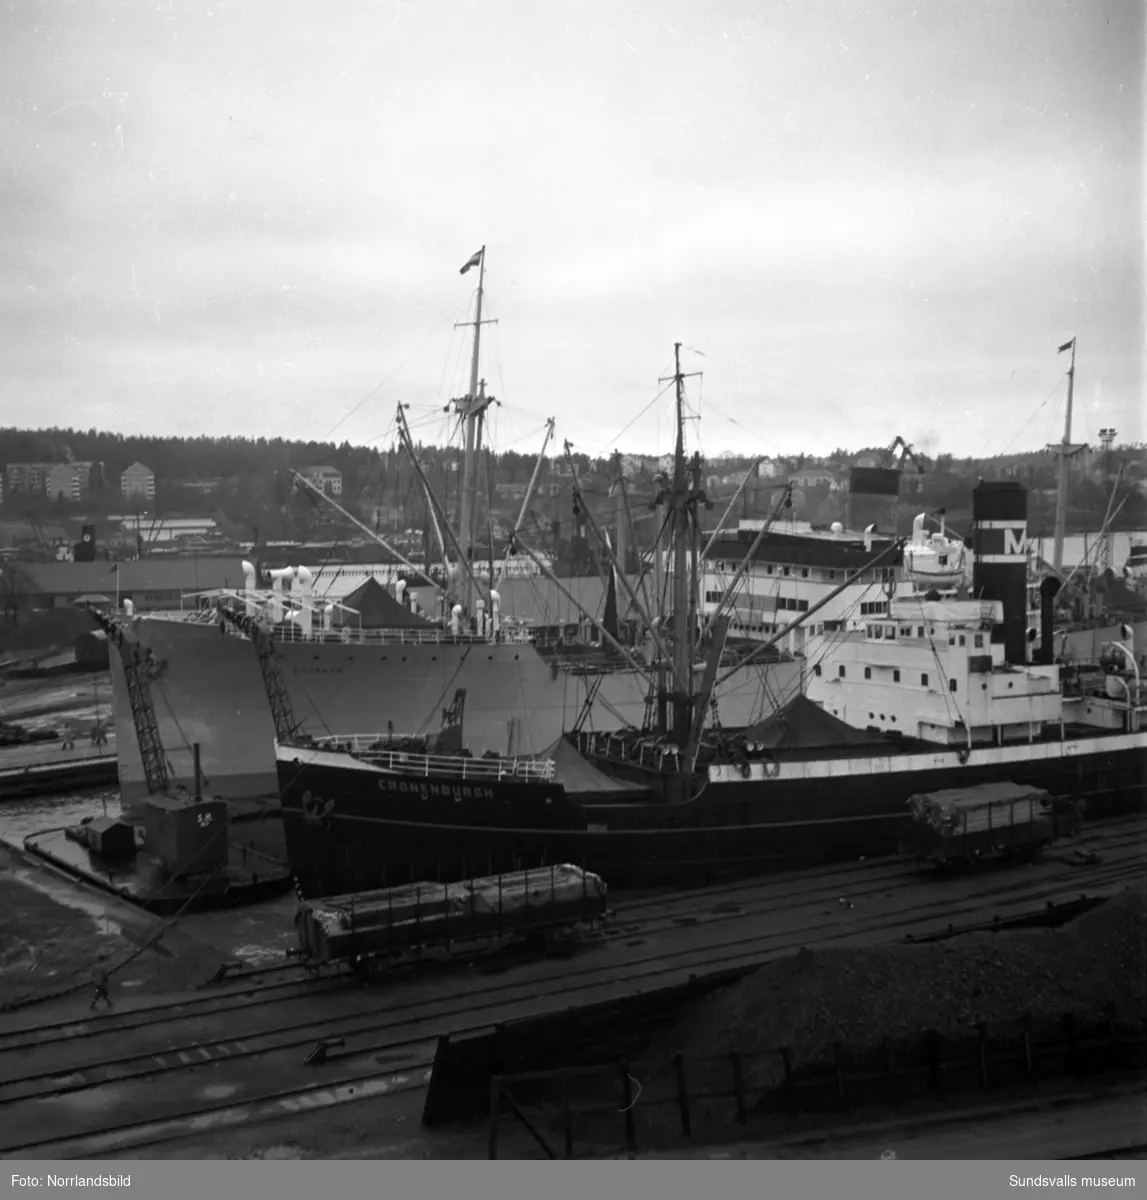 Tätt med båtar i Sundsvalls hamn. Cronenburgh och Ecuador är namn som syns.